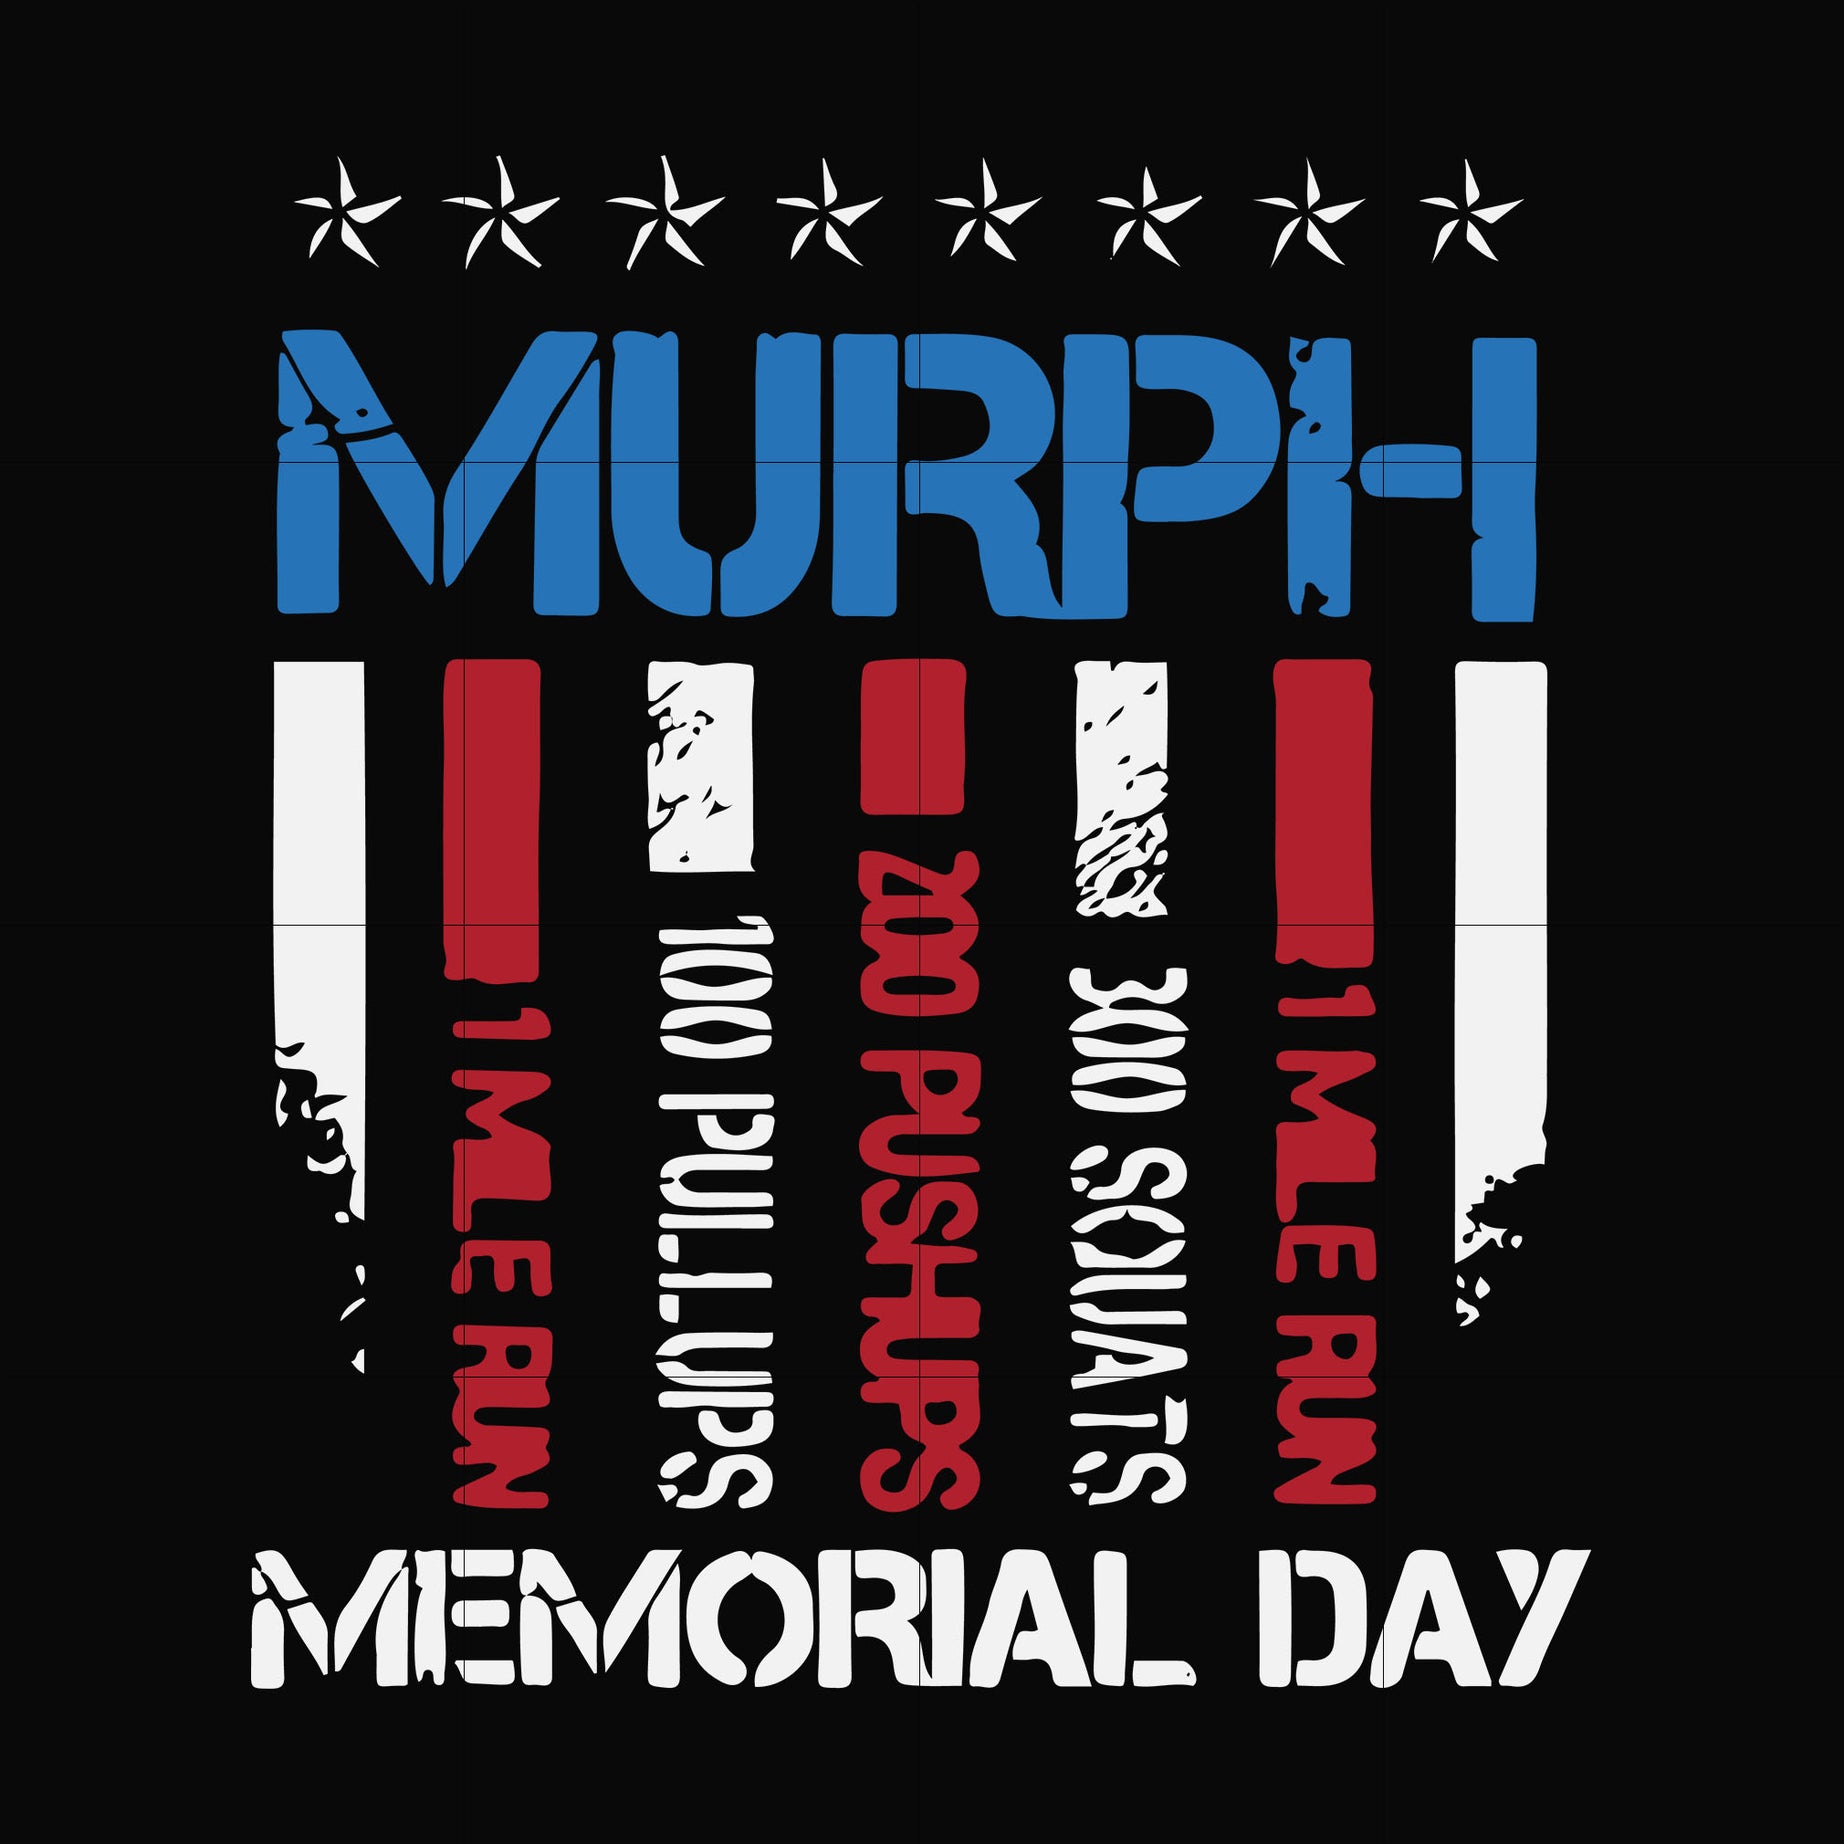 Murph memorial day svg, png, dxf, eps file FN000892